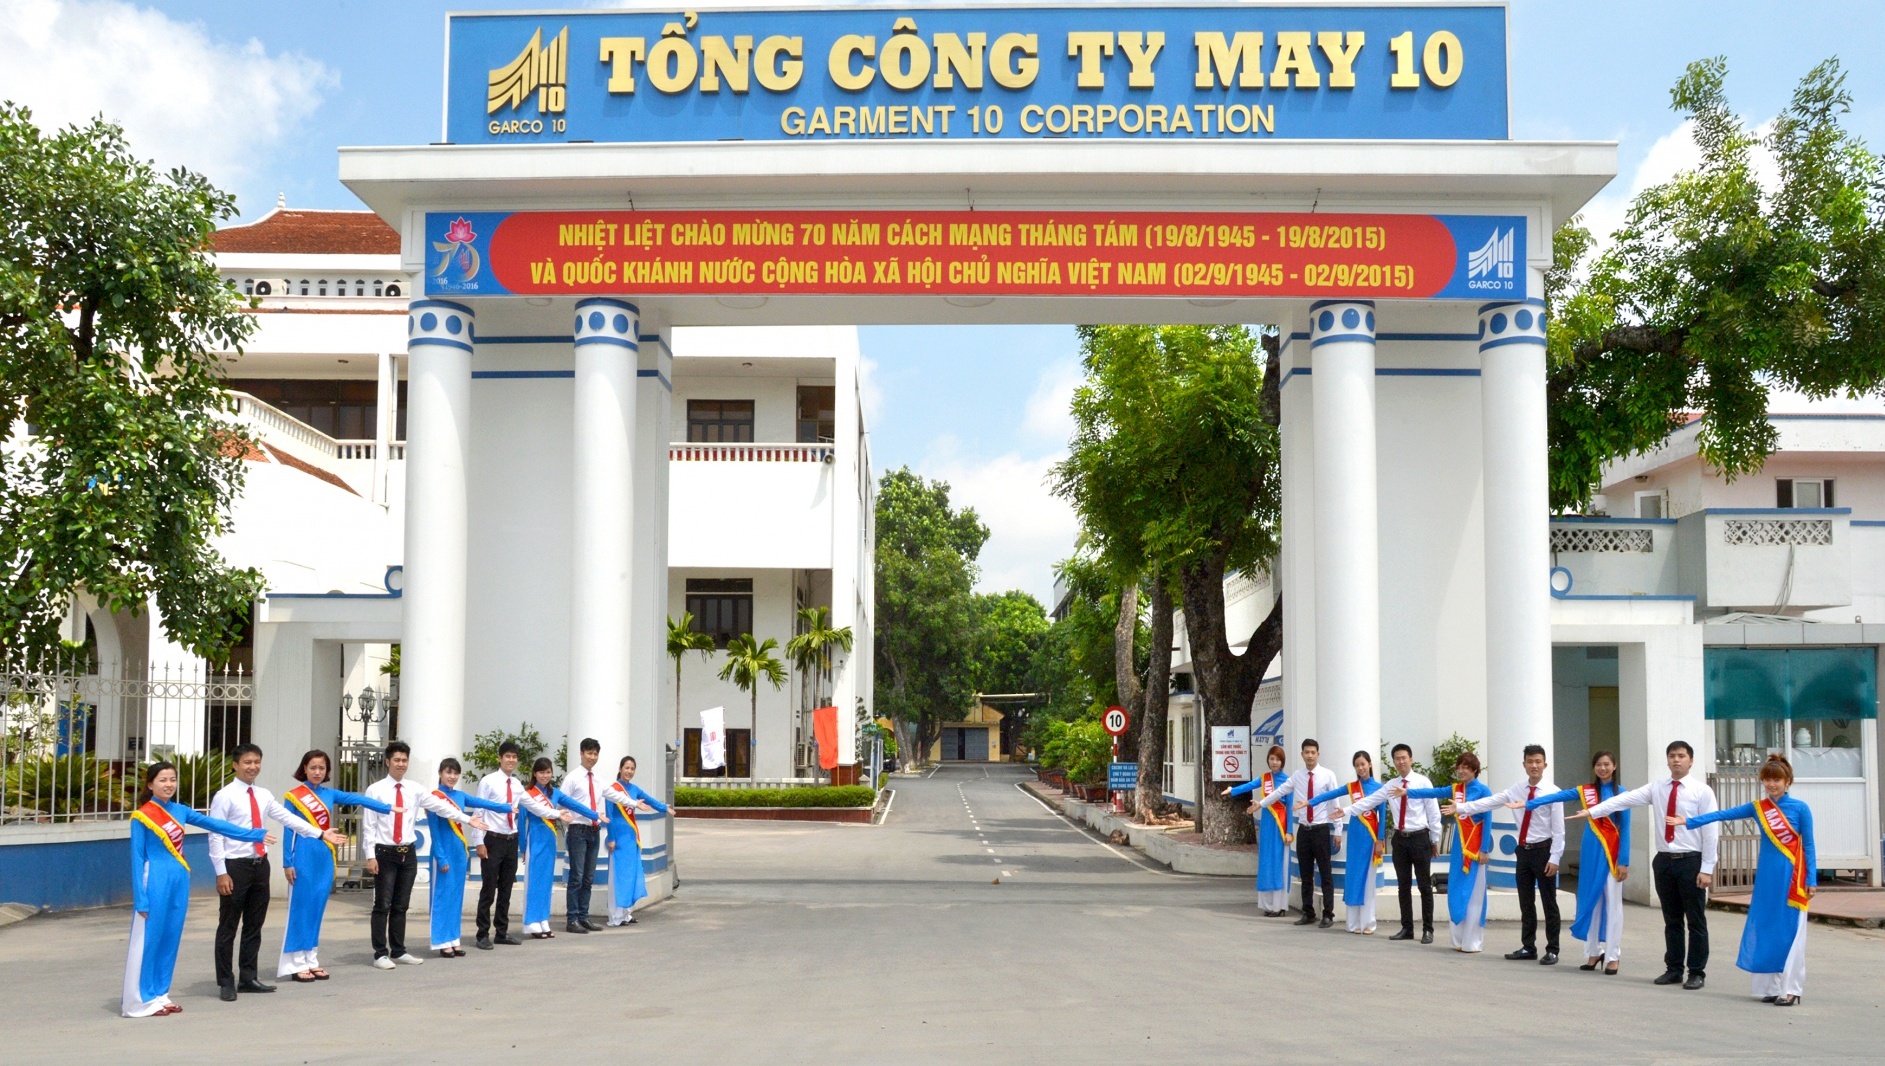 Tổng công ty May 10 cần tuyển dụng gấp 50 công nhân may, cắt, là tại Hà Nội